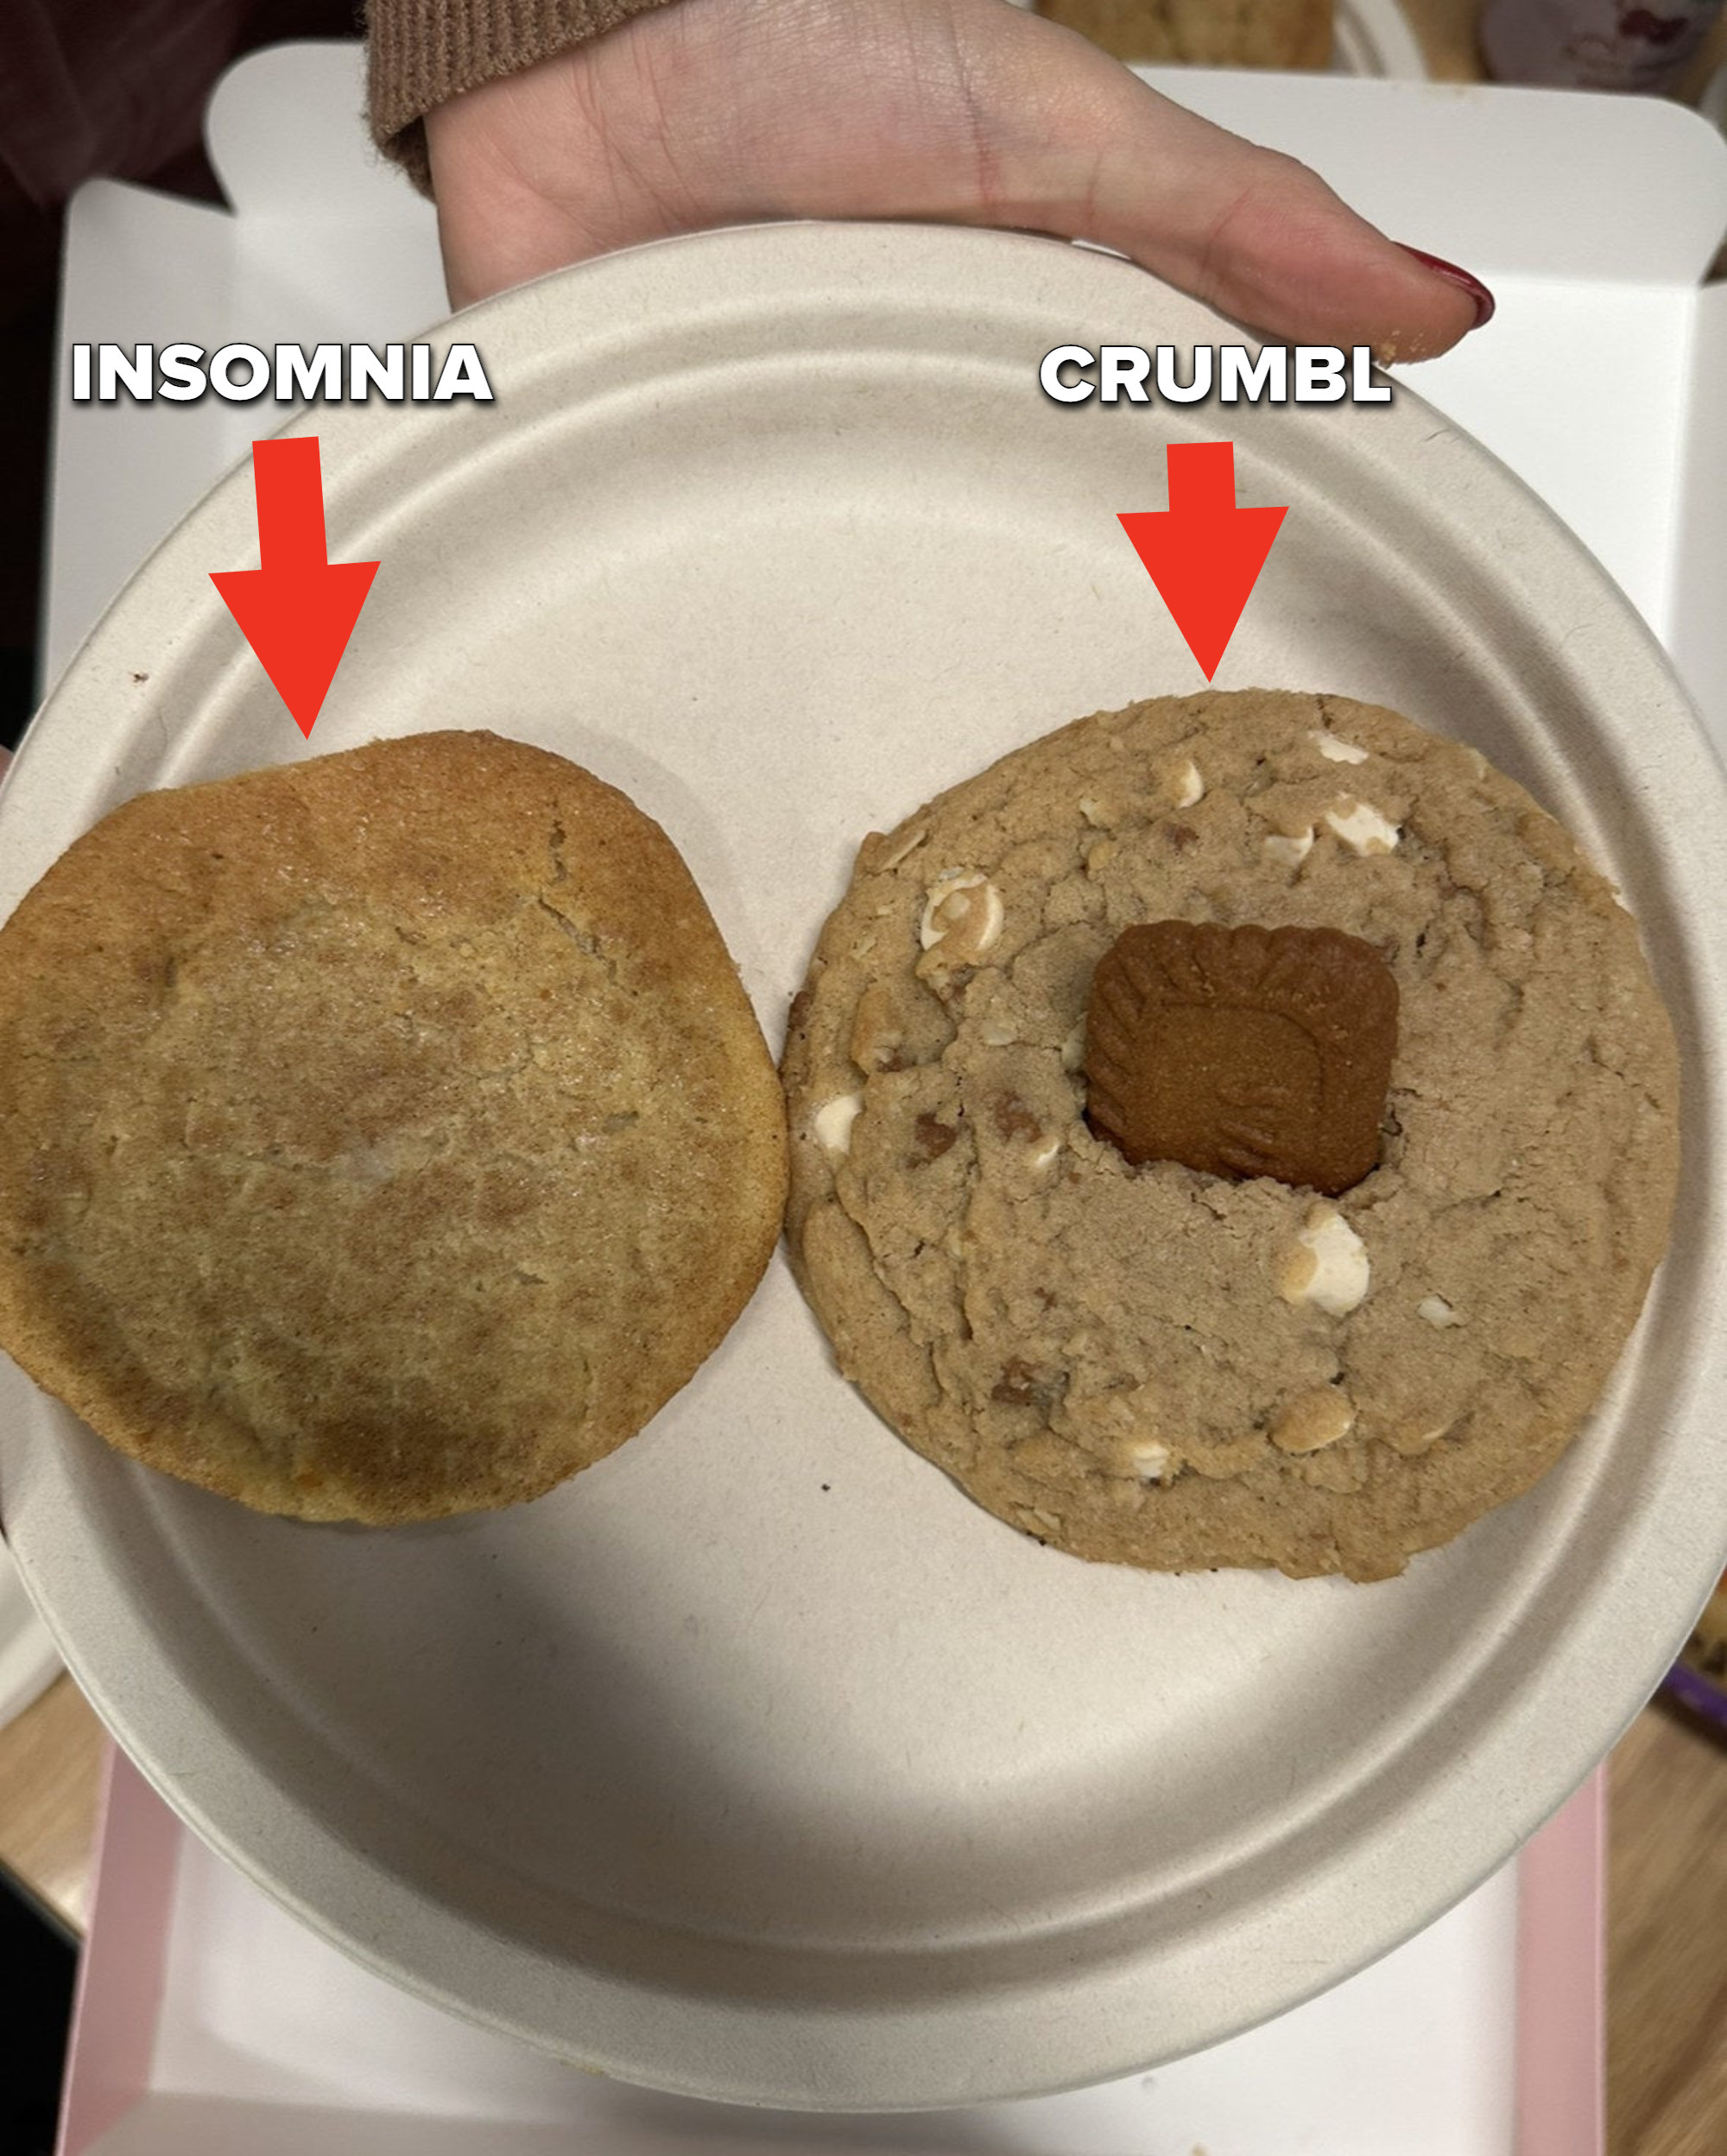 Insomnia vs. Crumbl cookies